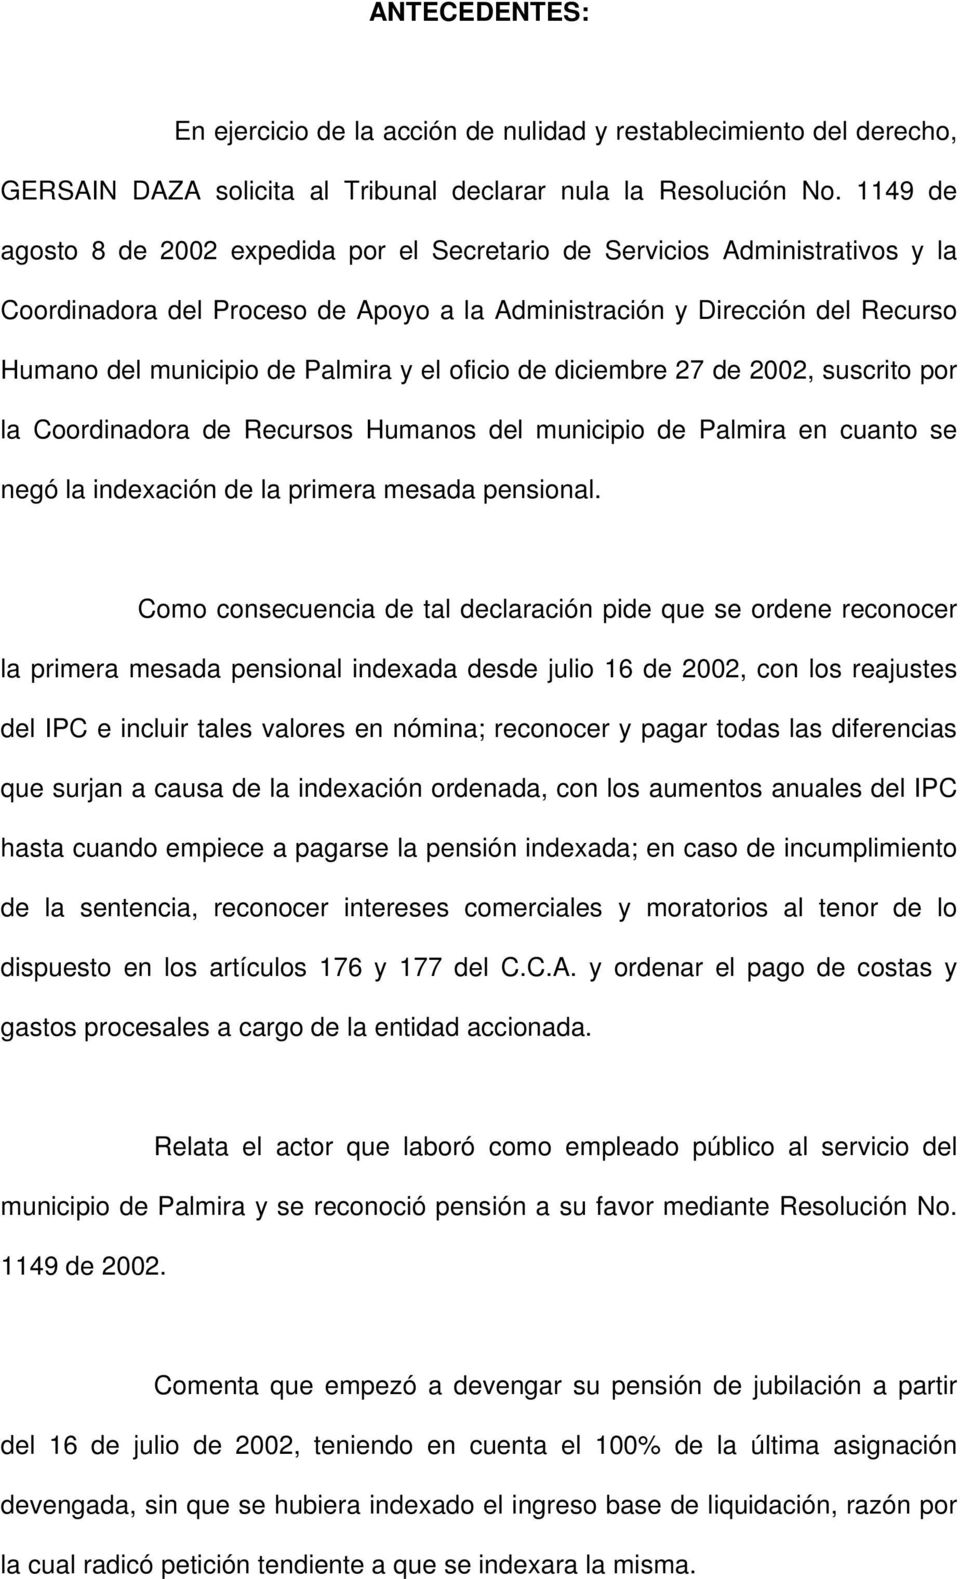 el oficio de diciembre 27 de 2002, suscrito por la Coordinadora de Recursos Humanos del municipio de Palmira en cuanto se negó la indexación de la primera mesada pensional.